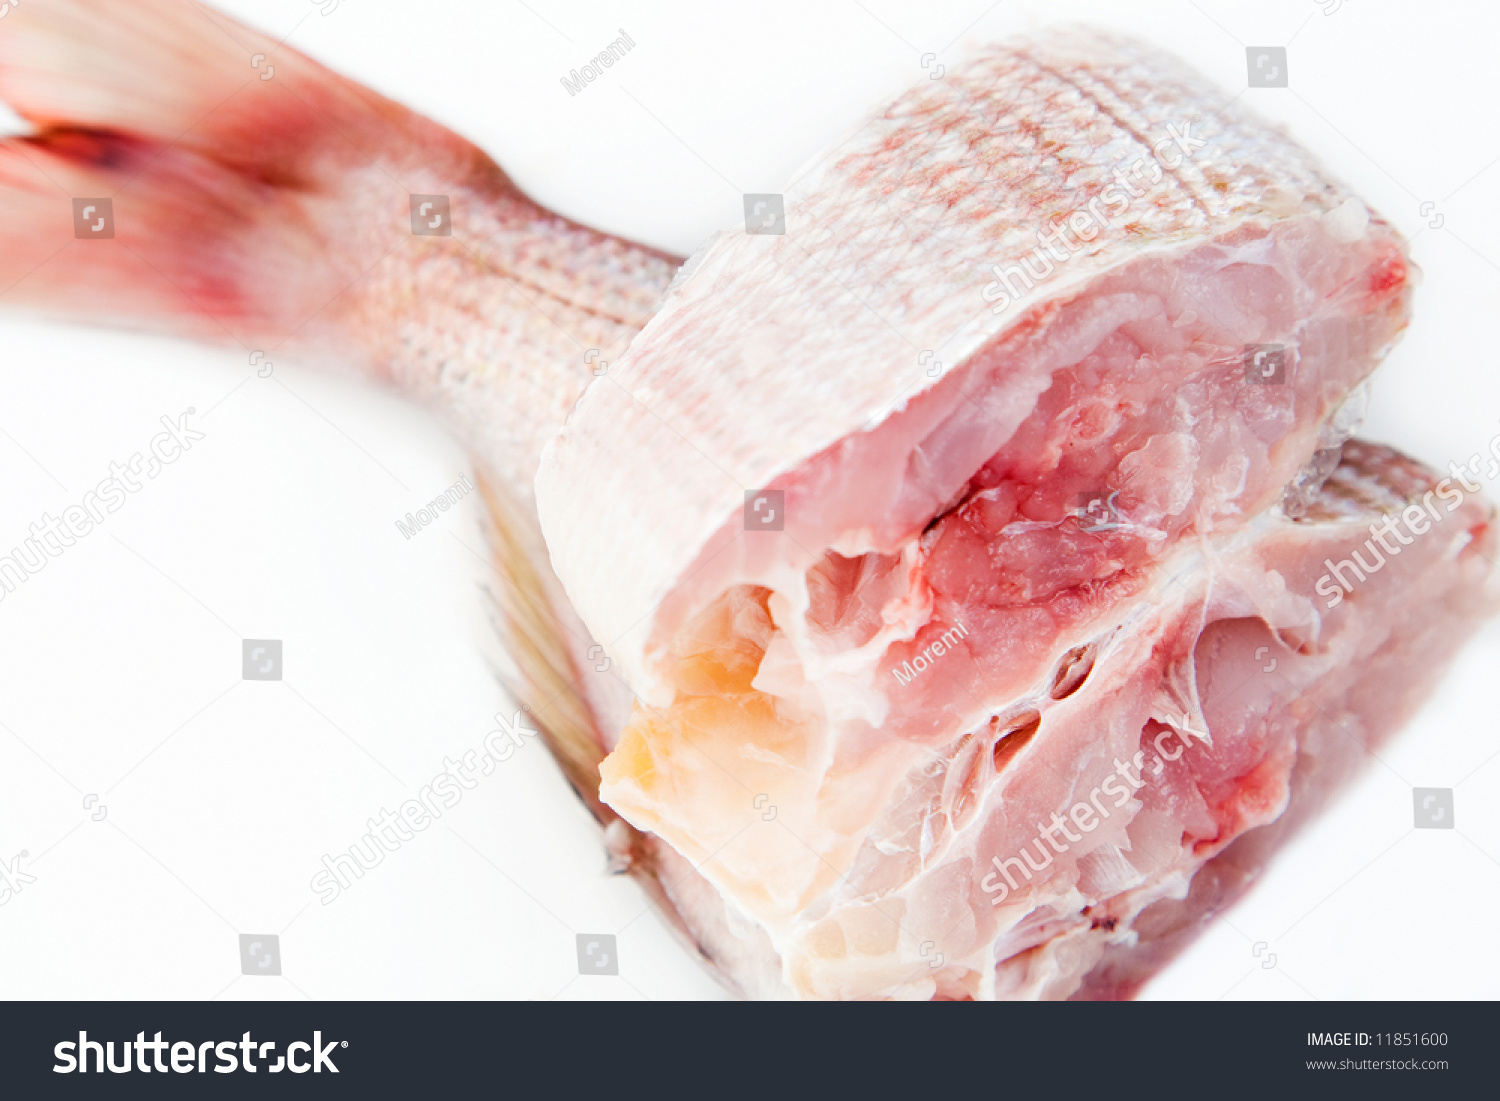 Fresh Fish Stock Photo 11851600 - Shutterstock